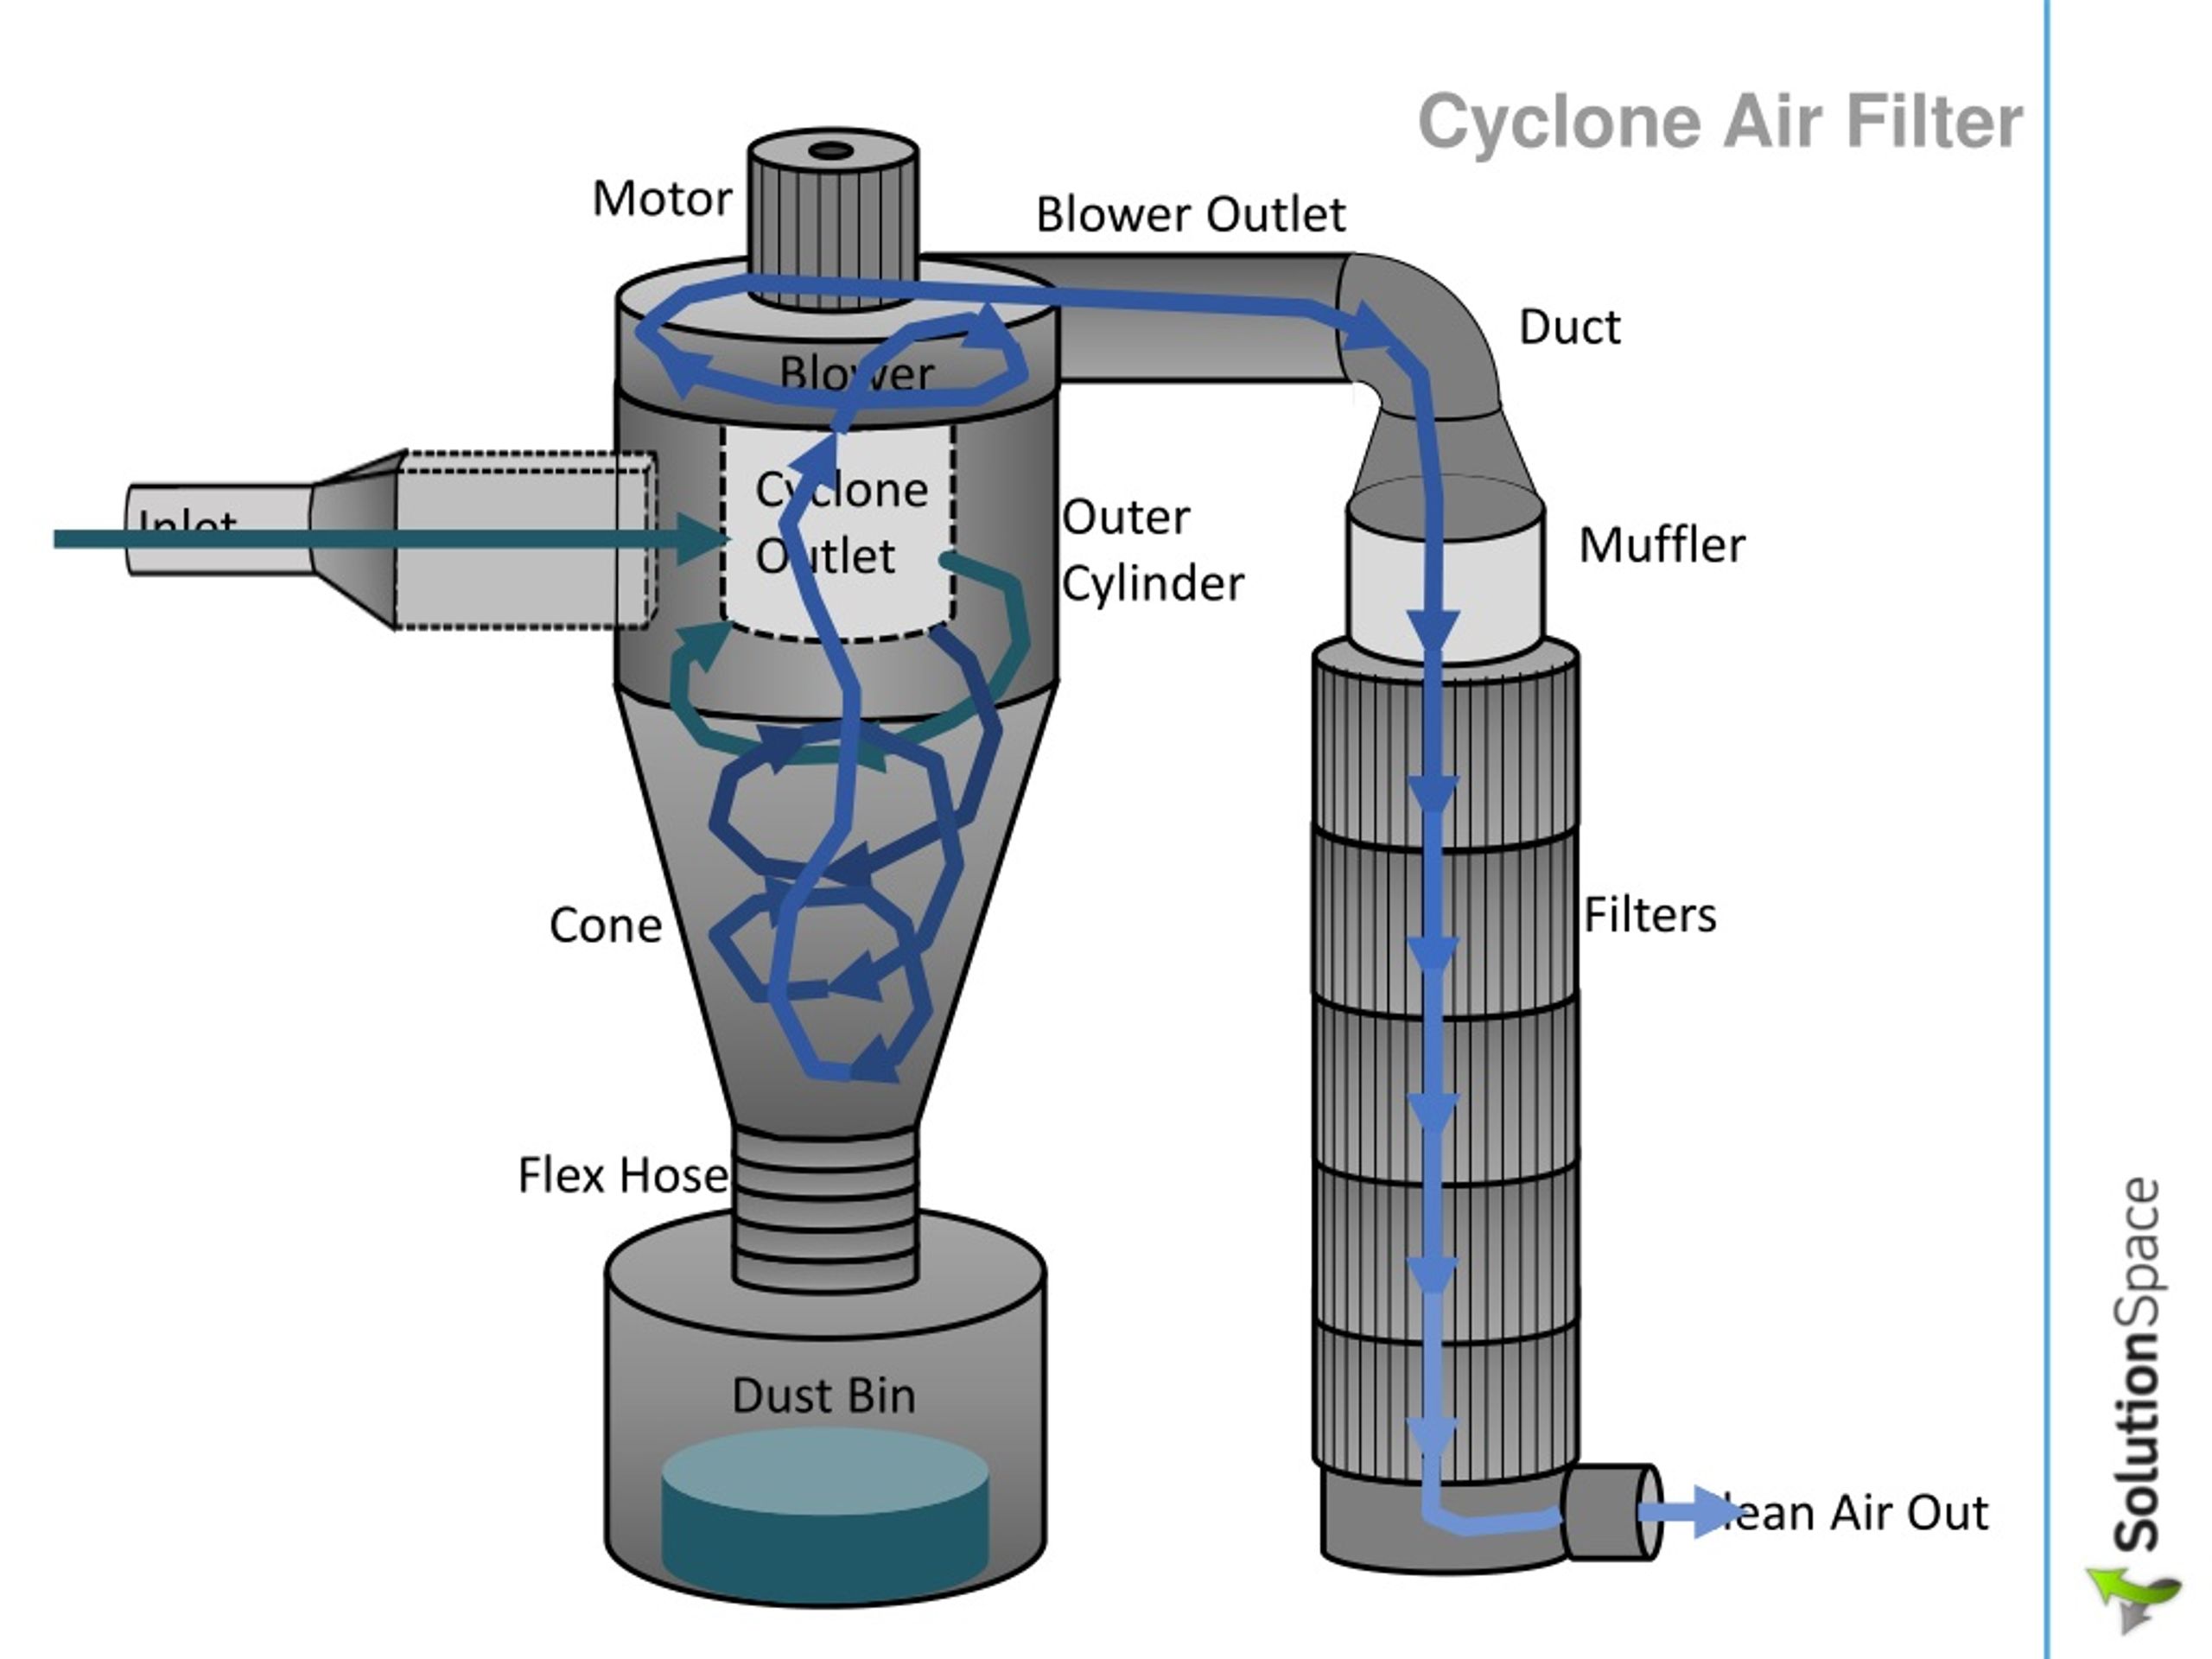 Cyclone filters. Циклон пылеуловитель чертеж. Фильтр типа циклон для газа. Фильтр циклон для воздуха 25мкм. Циклон фильтр Тип 6 профи вид снизу.